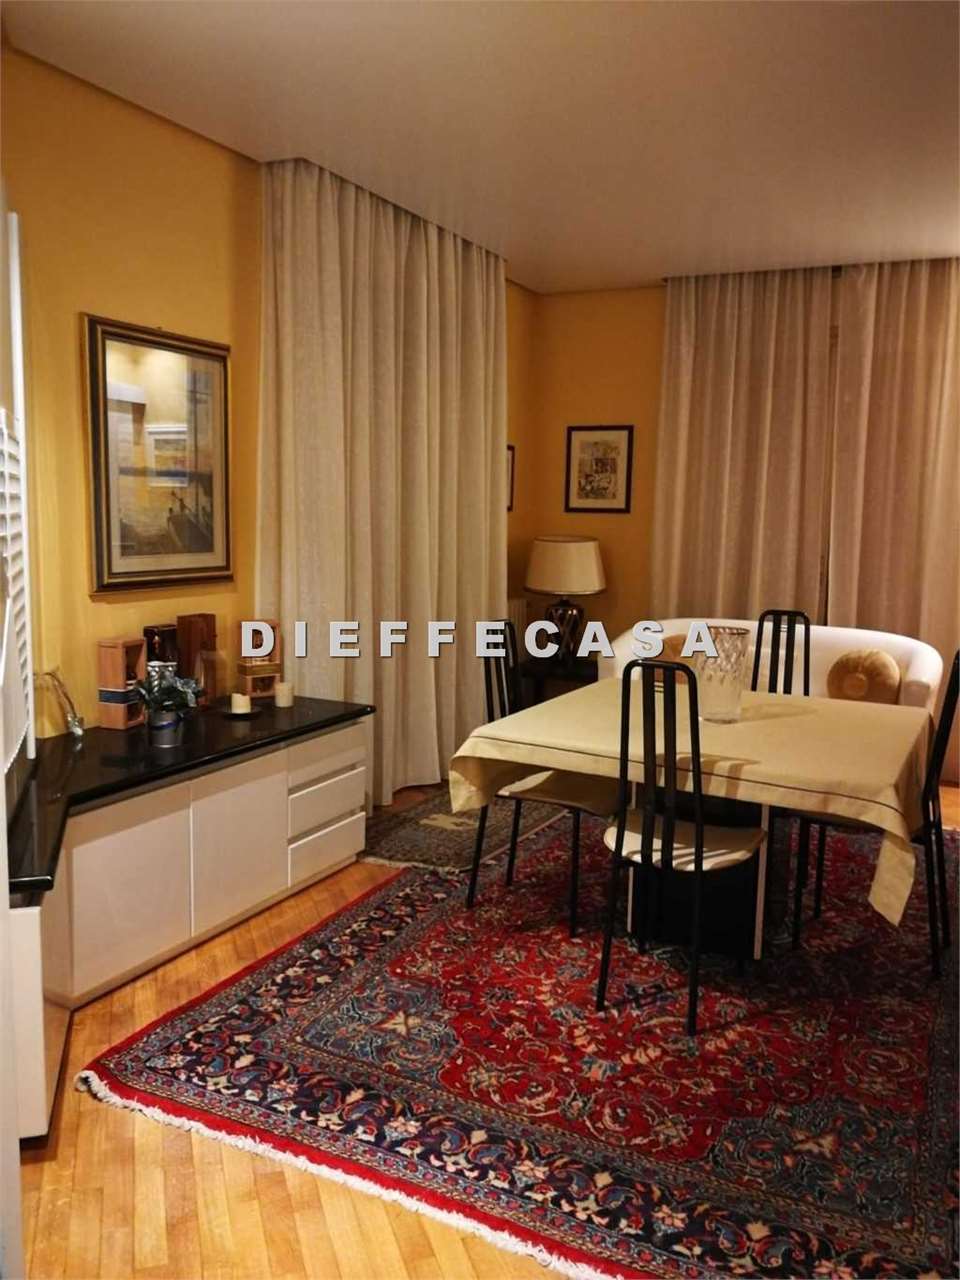 Appartamento in affitto a Marsala, 3 locali, zona Località: Centro, prezzo € 700 | CambioCasa.it